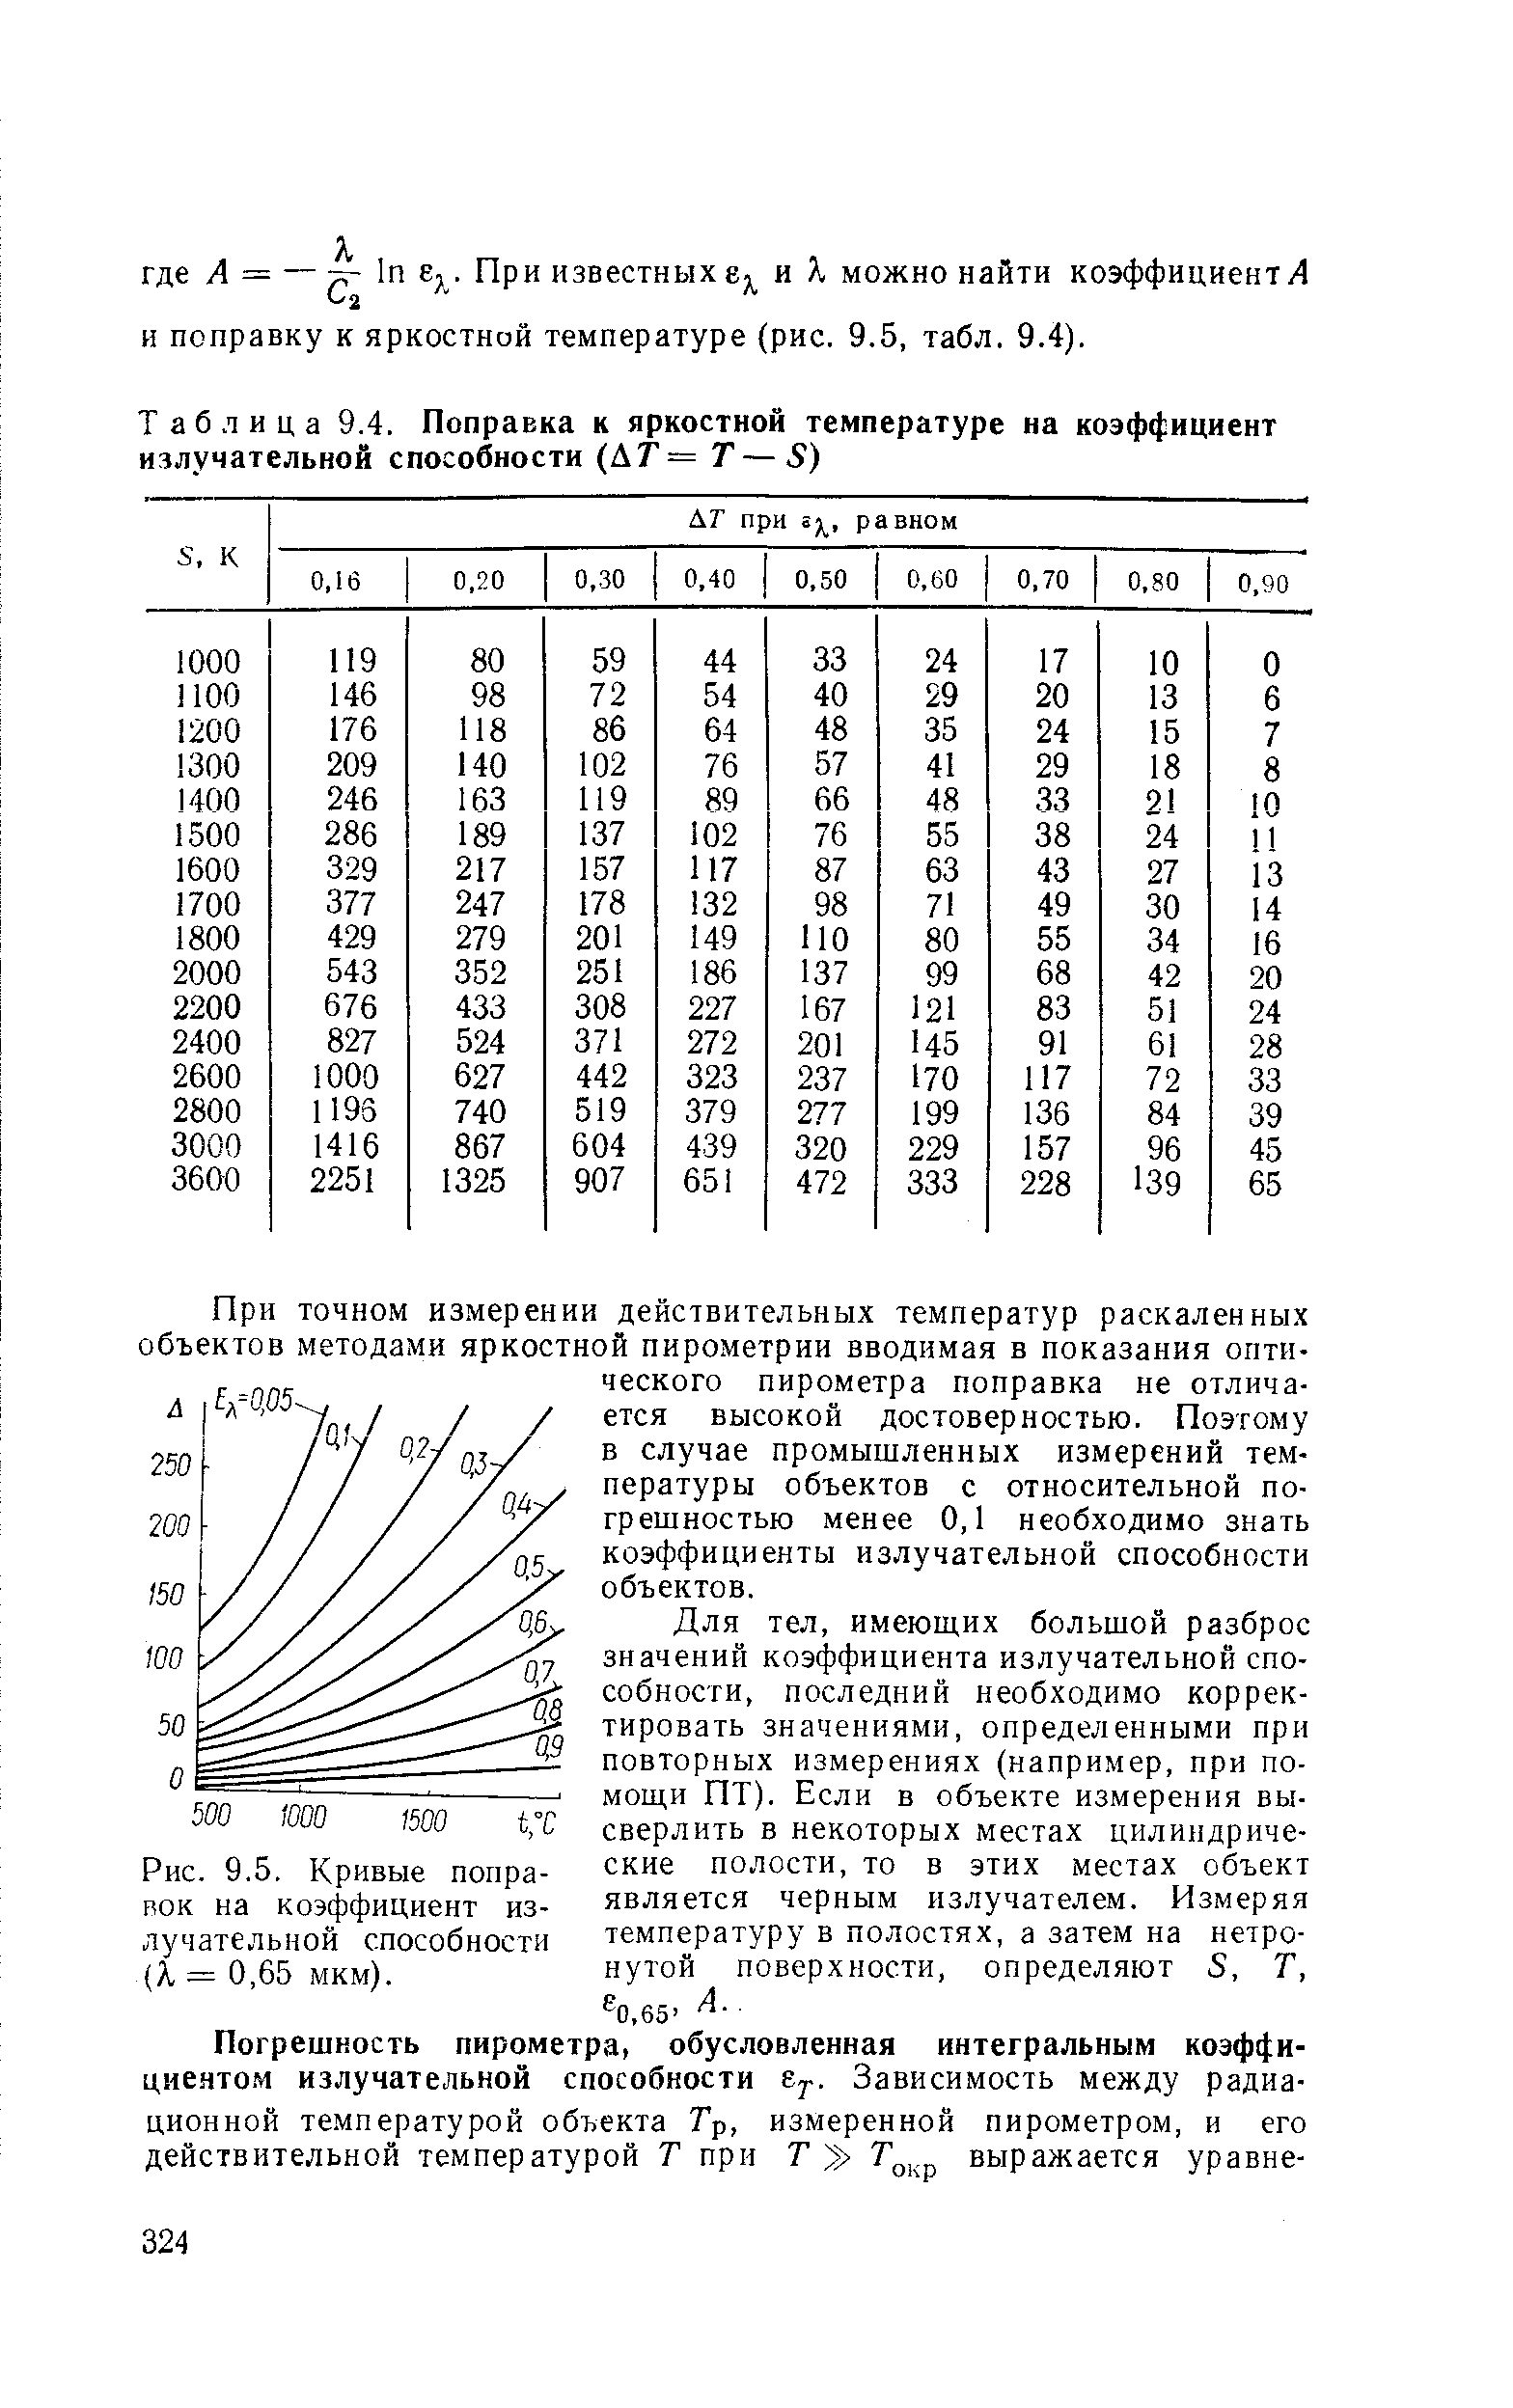 Рис. 9.5, Кривые поправок на коэффициент излучательной способности (X = 0,65 мкм).
